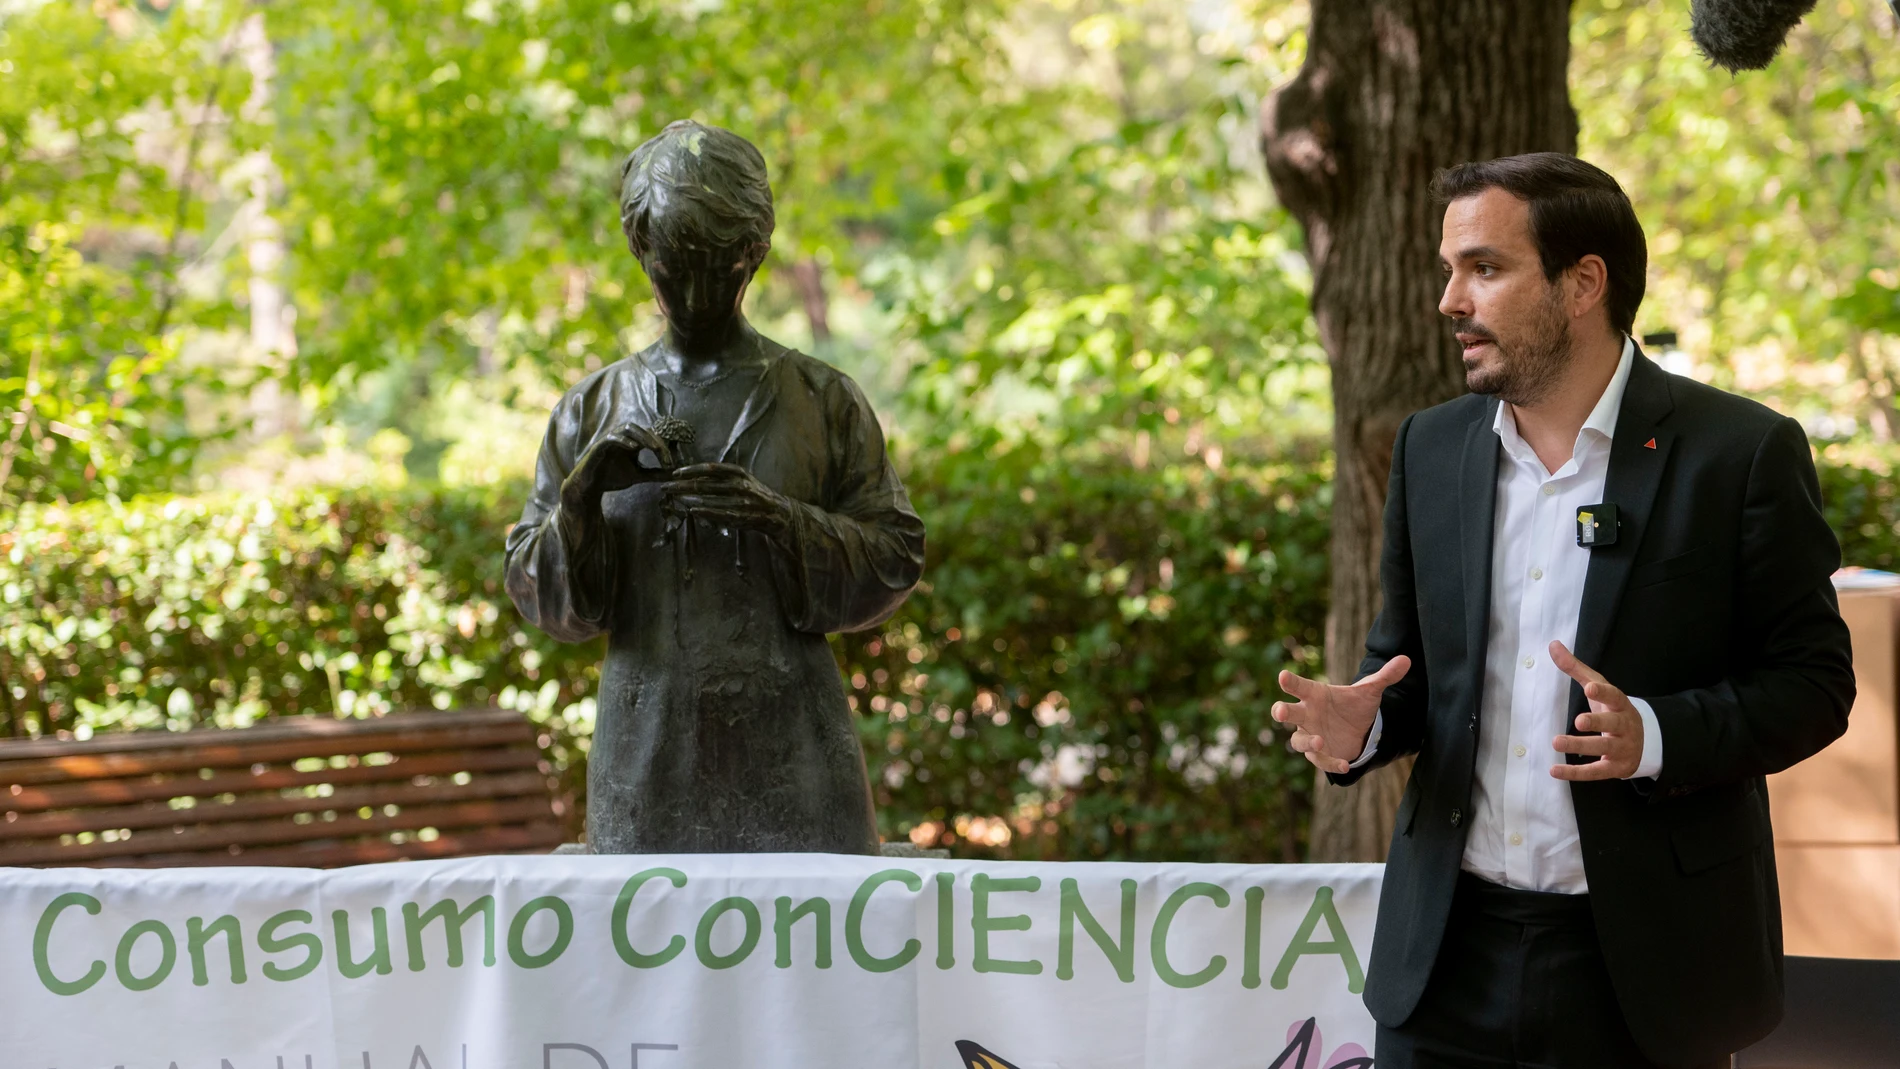 El ministro de Consumo, Alberto Garzón, interviene durante la clausura de la jornada 'Consumo Consciente' en el Real Jardín Botánico, a 30 de septiembre de 2021